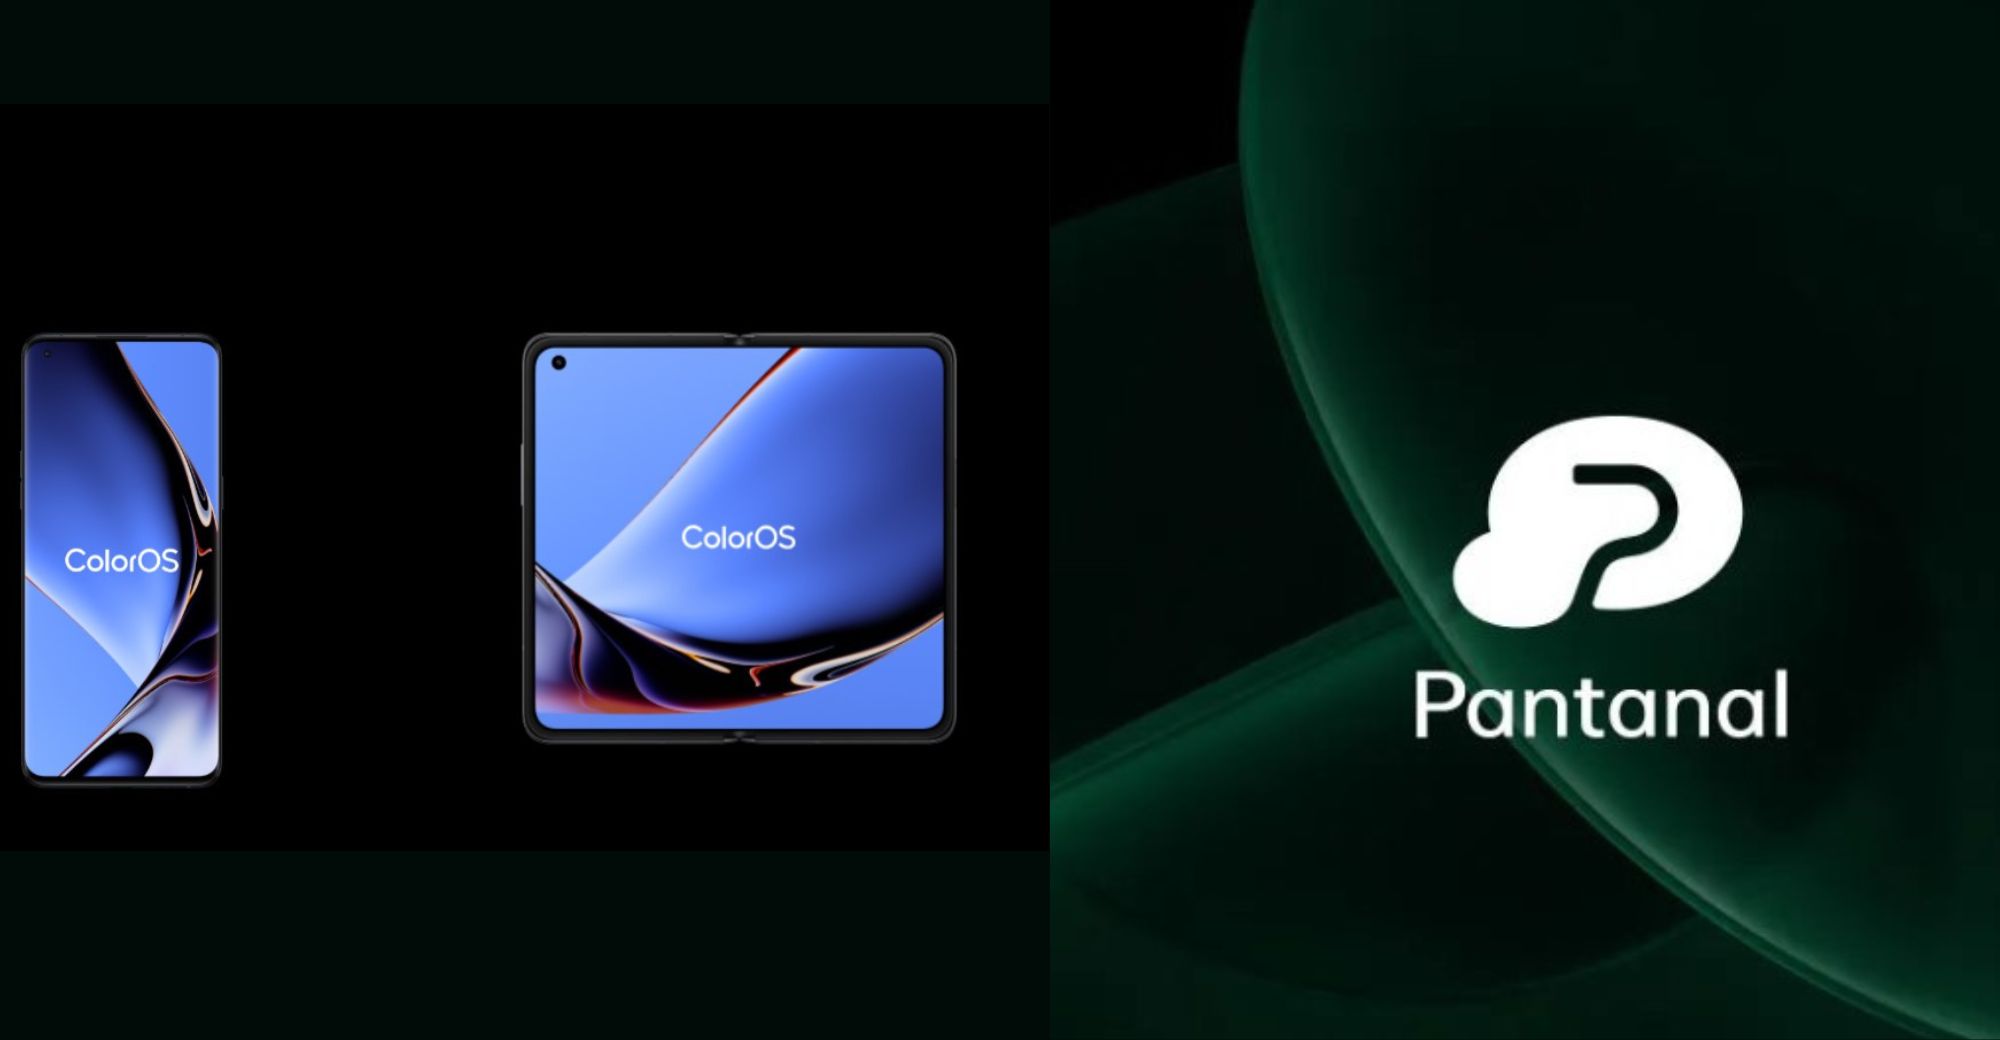 OPPO ने चीन में ColorOS 13 और स्मार्ट क्रॉस-एंड सिस्टम पैंटेनल का विमोचन किया